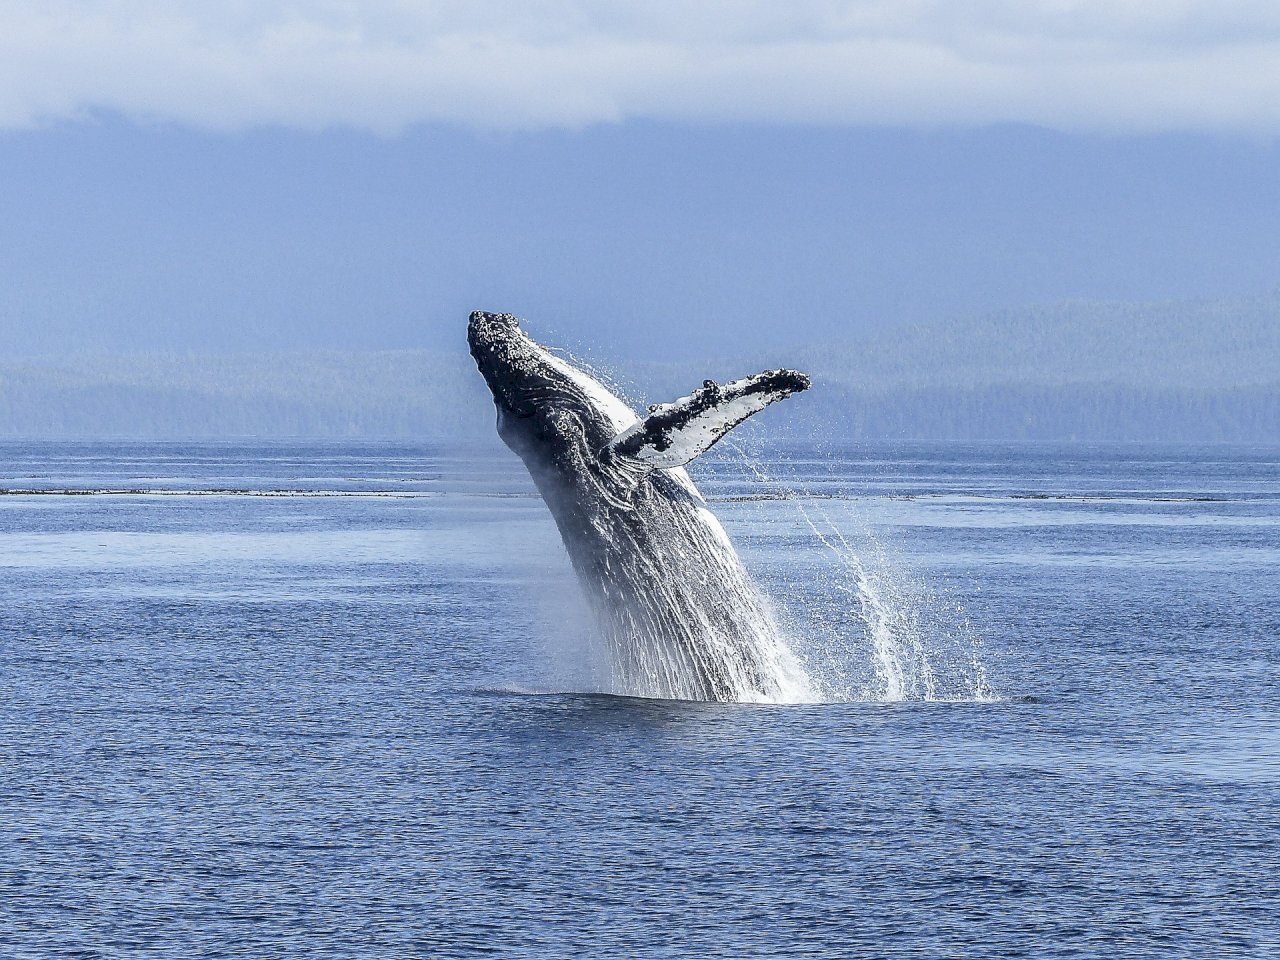 日本重啟商業捕鯨 專家警告塞鯨面臨滅絕危機